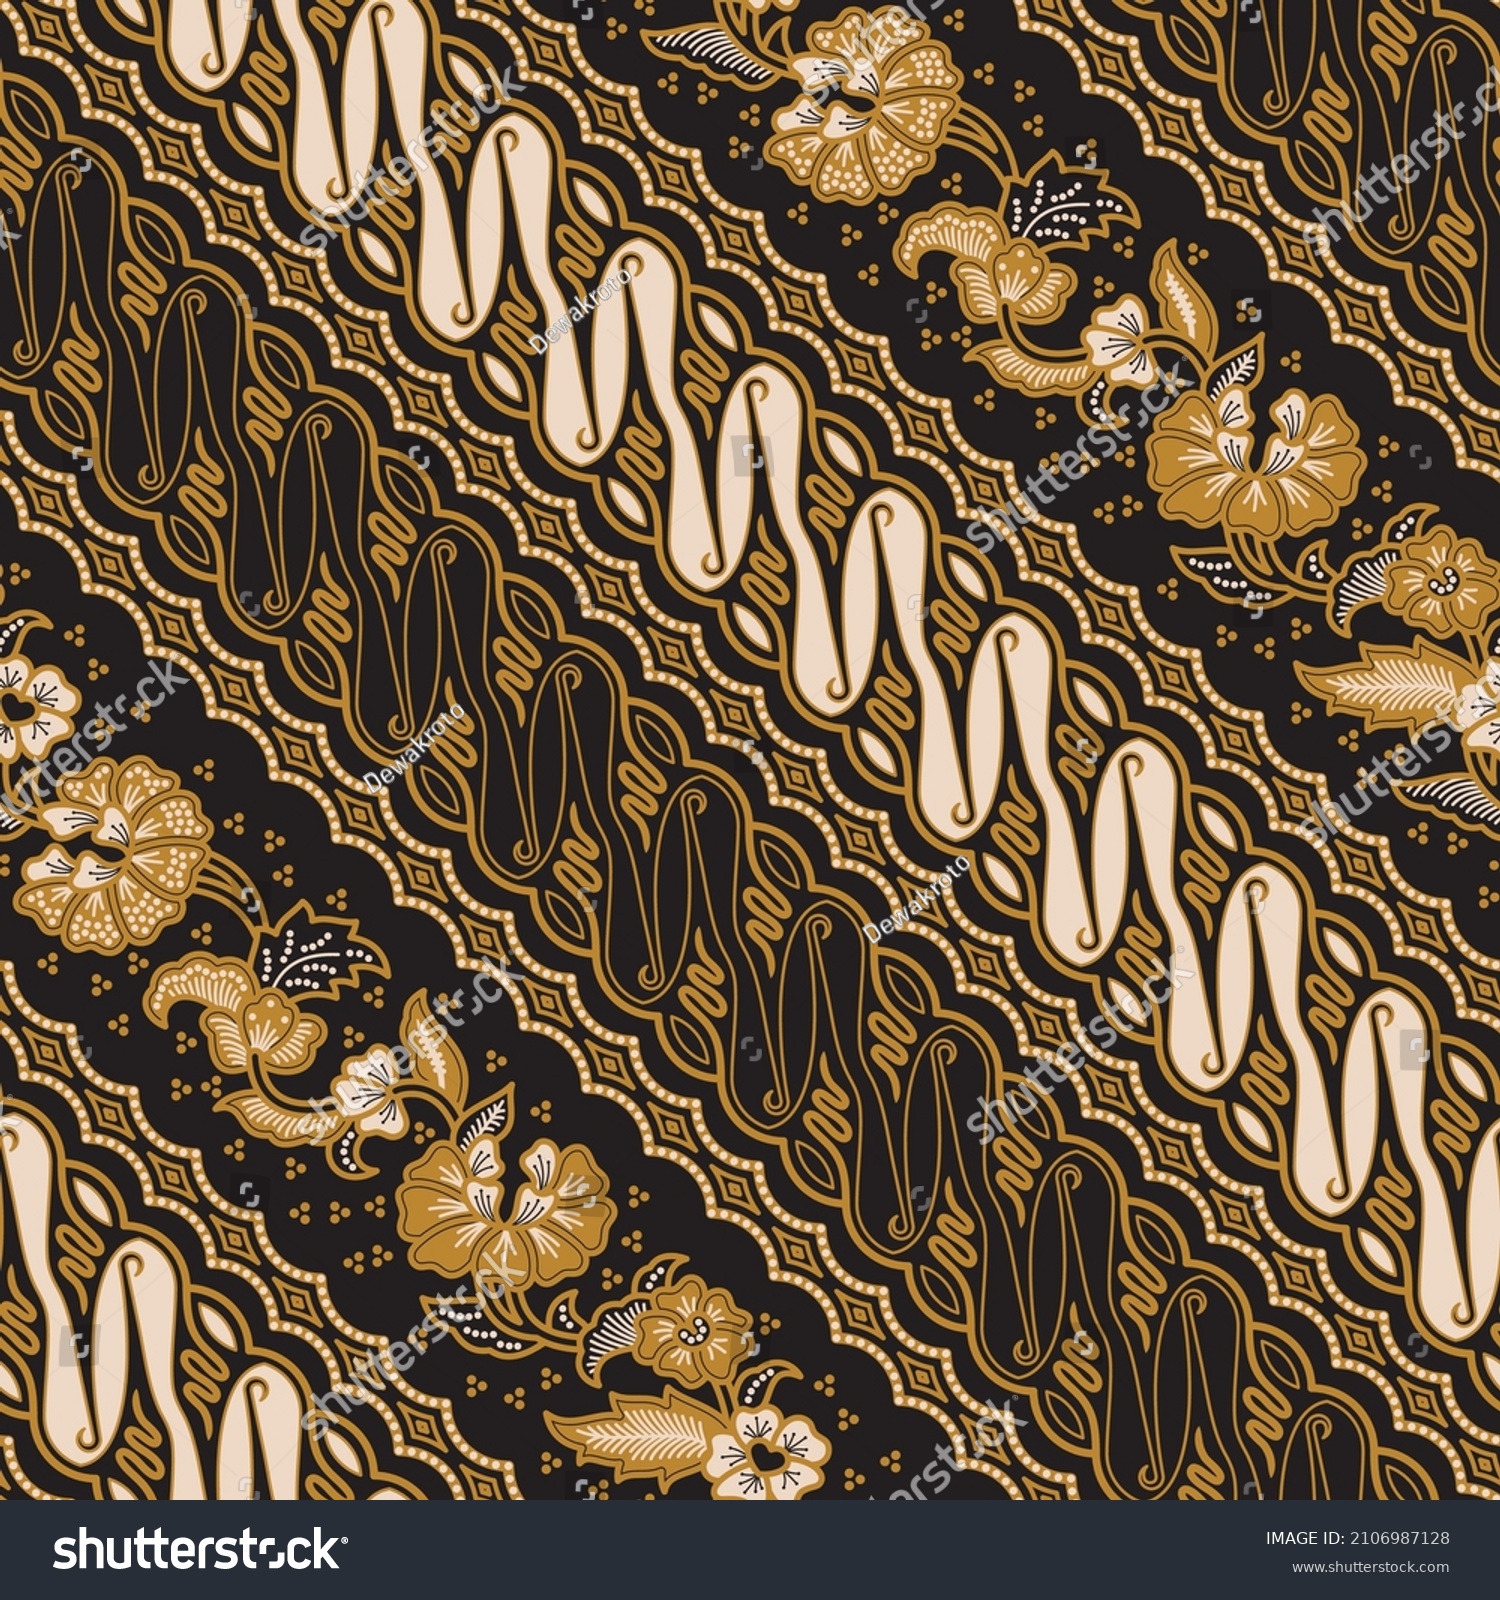 SVG of Traditional Javanese Batik, illustration of Parang and floral pattern in style, version 001.
Batik Jawa tradisional, gaya ilustrasi perpaduan dari motif Parang dan kembang, versi 001. svg